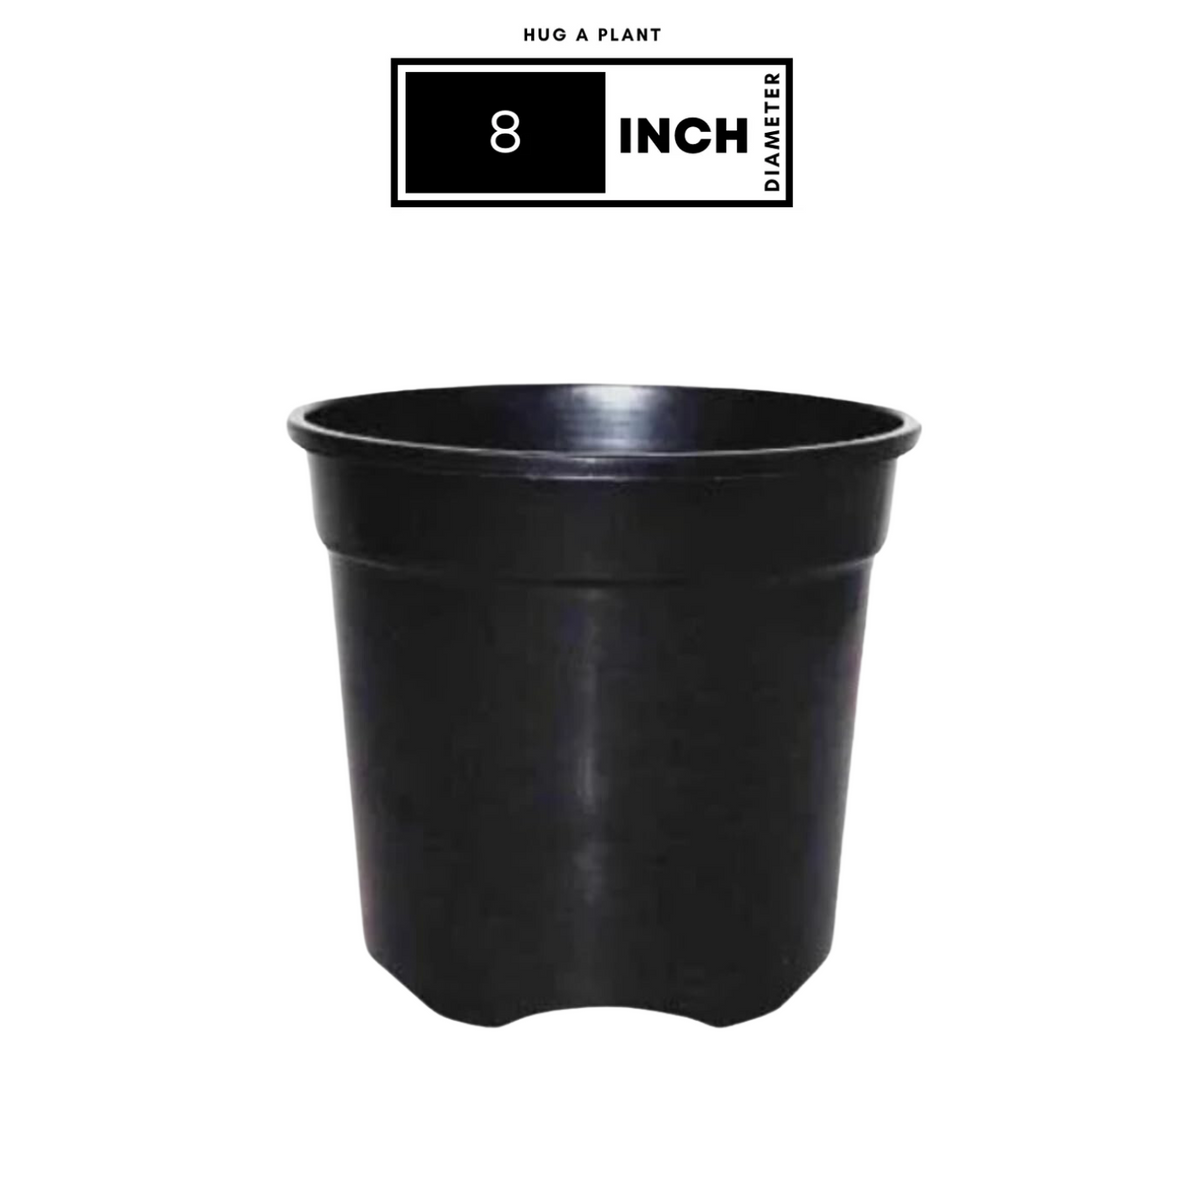 8 Inch Gro Pro Black Plastic Pot for Home & Garden